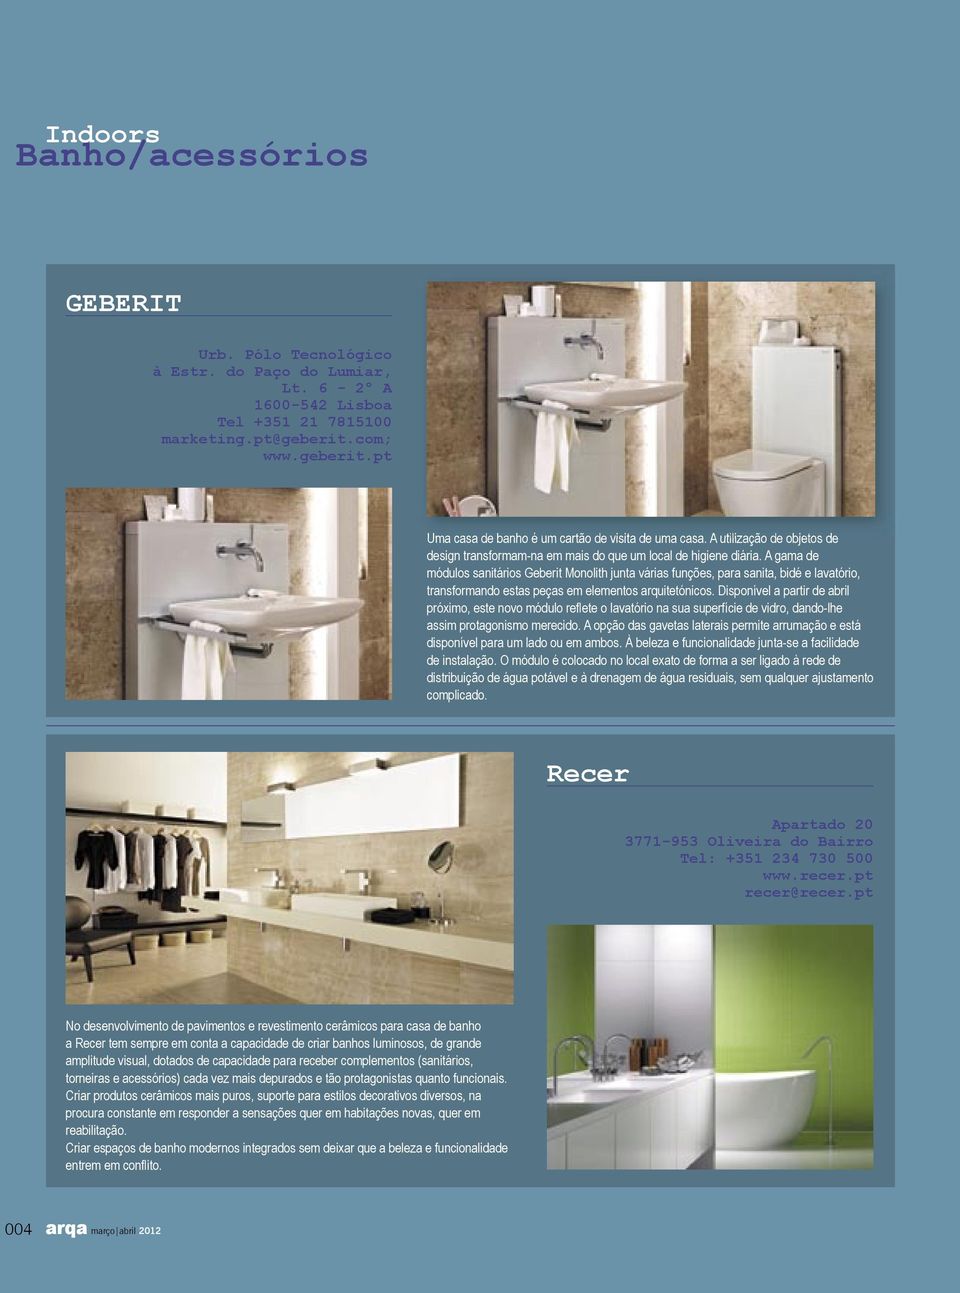 A gama de módulos sanitários Geberit Monolith junta várias funções, para sanita, bidé e lavatório, transformando estas peças em elementos arquitetónicos.